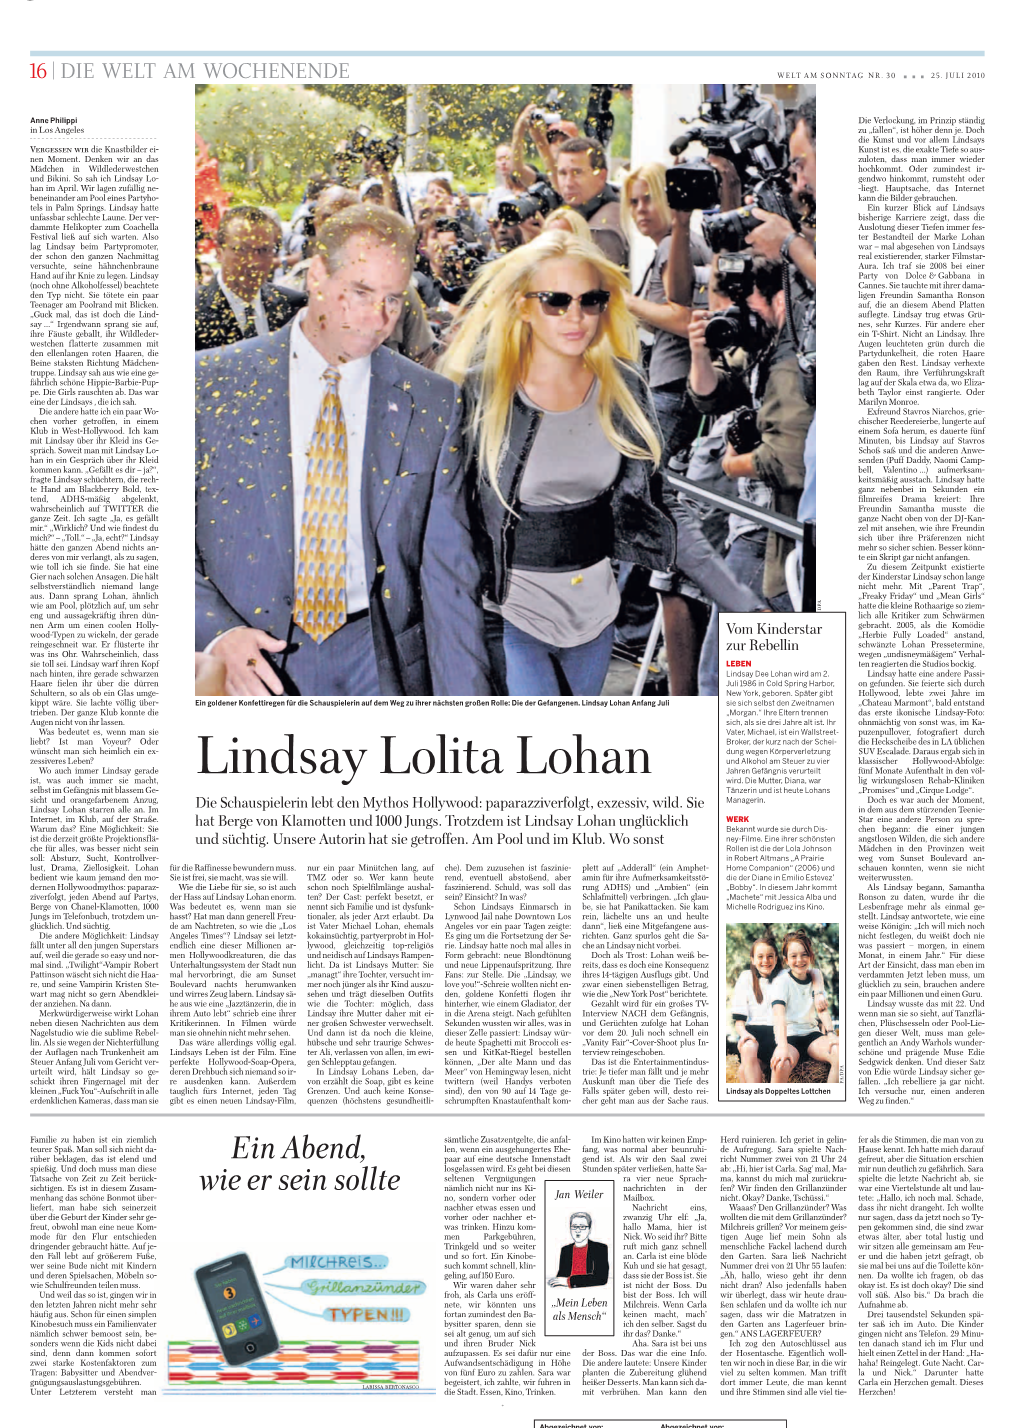 Lindsay Lolita Lohan Jahren Gefängnis Verurteilt Fünf Monate Aufenthalt in Den Völ- Ist, Was Auch Immer Sie Macht, Wird